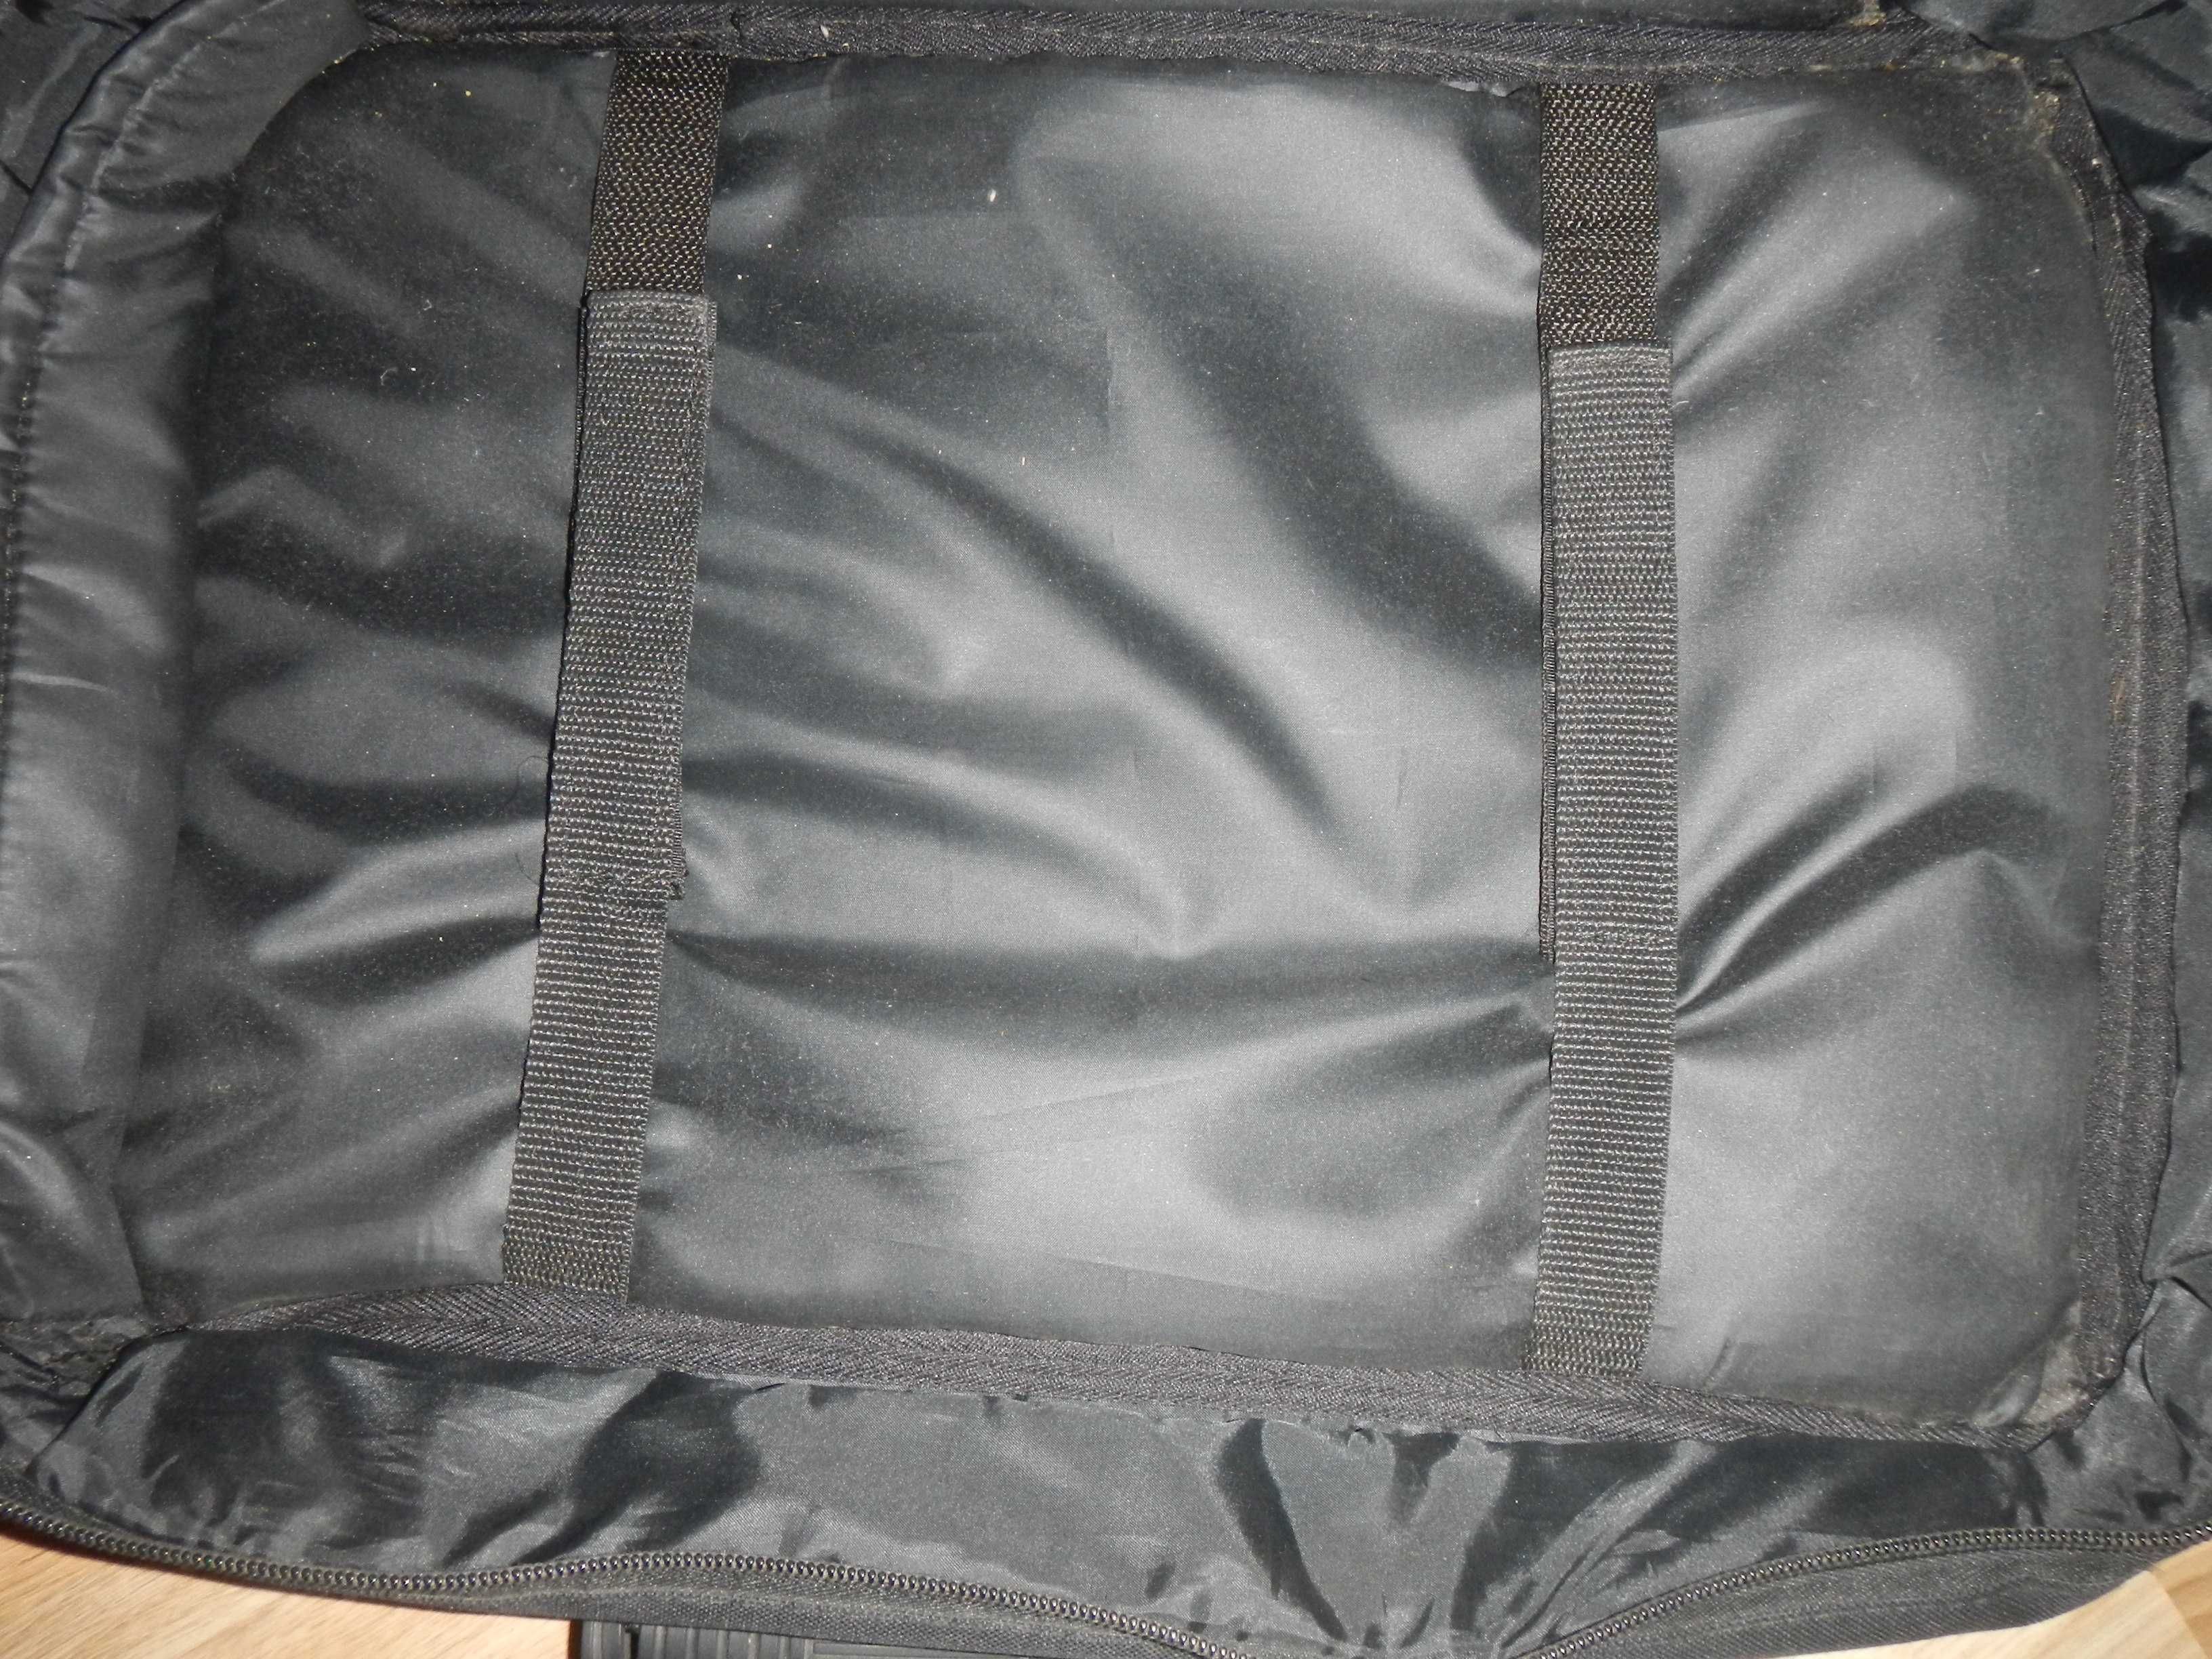 torba na laptopa duza 15,6